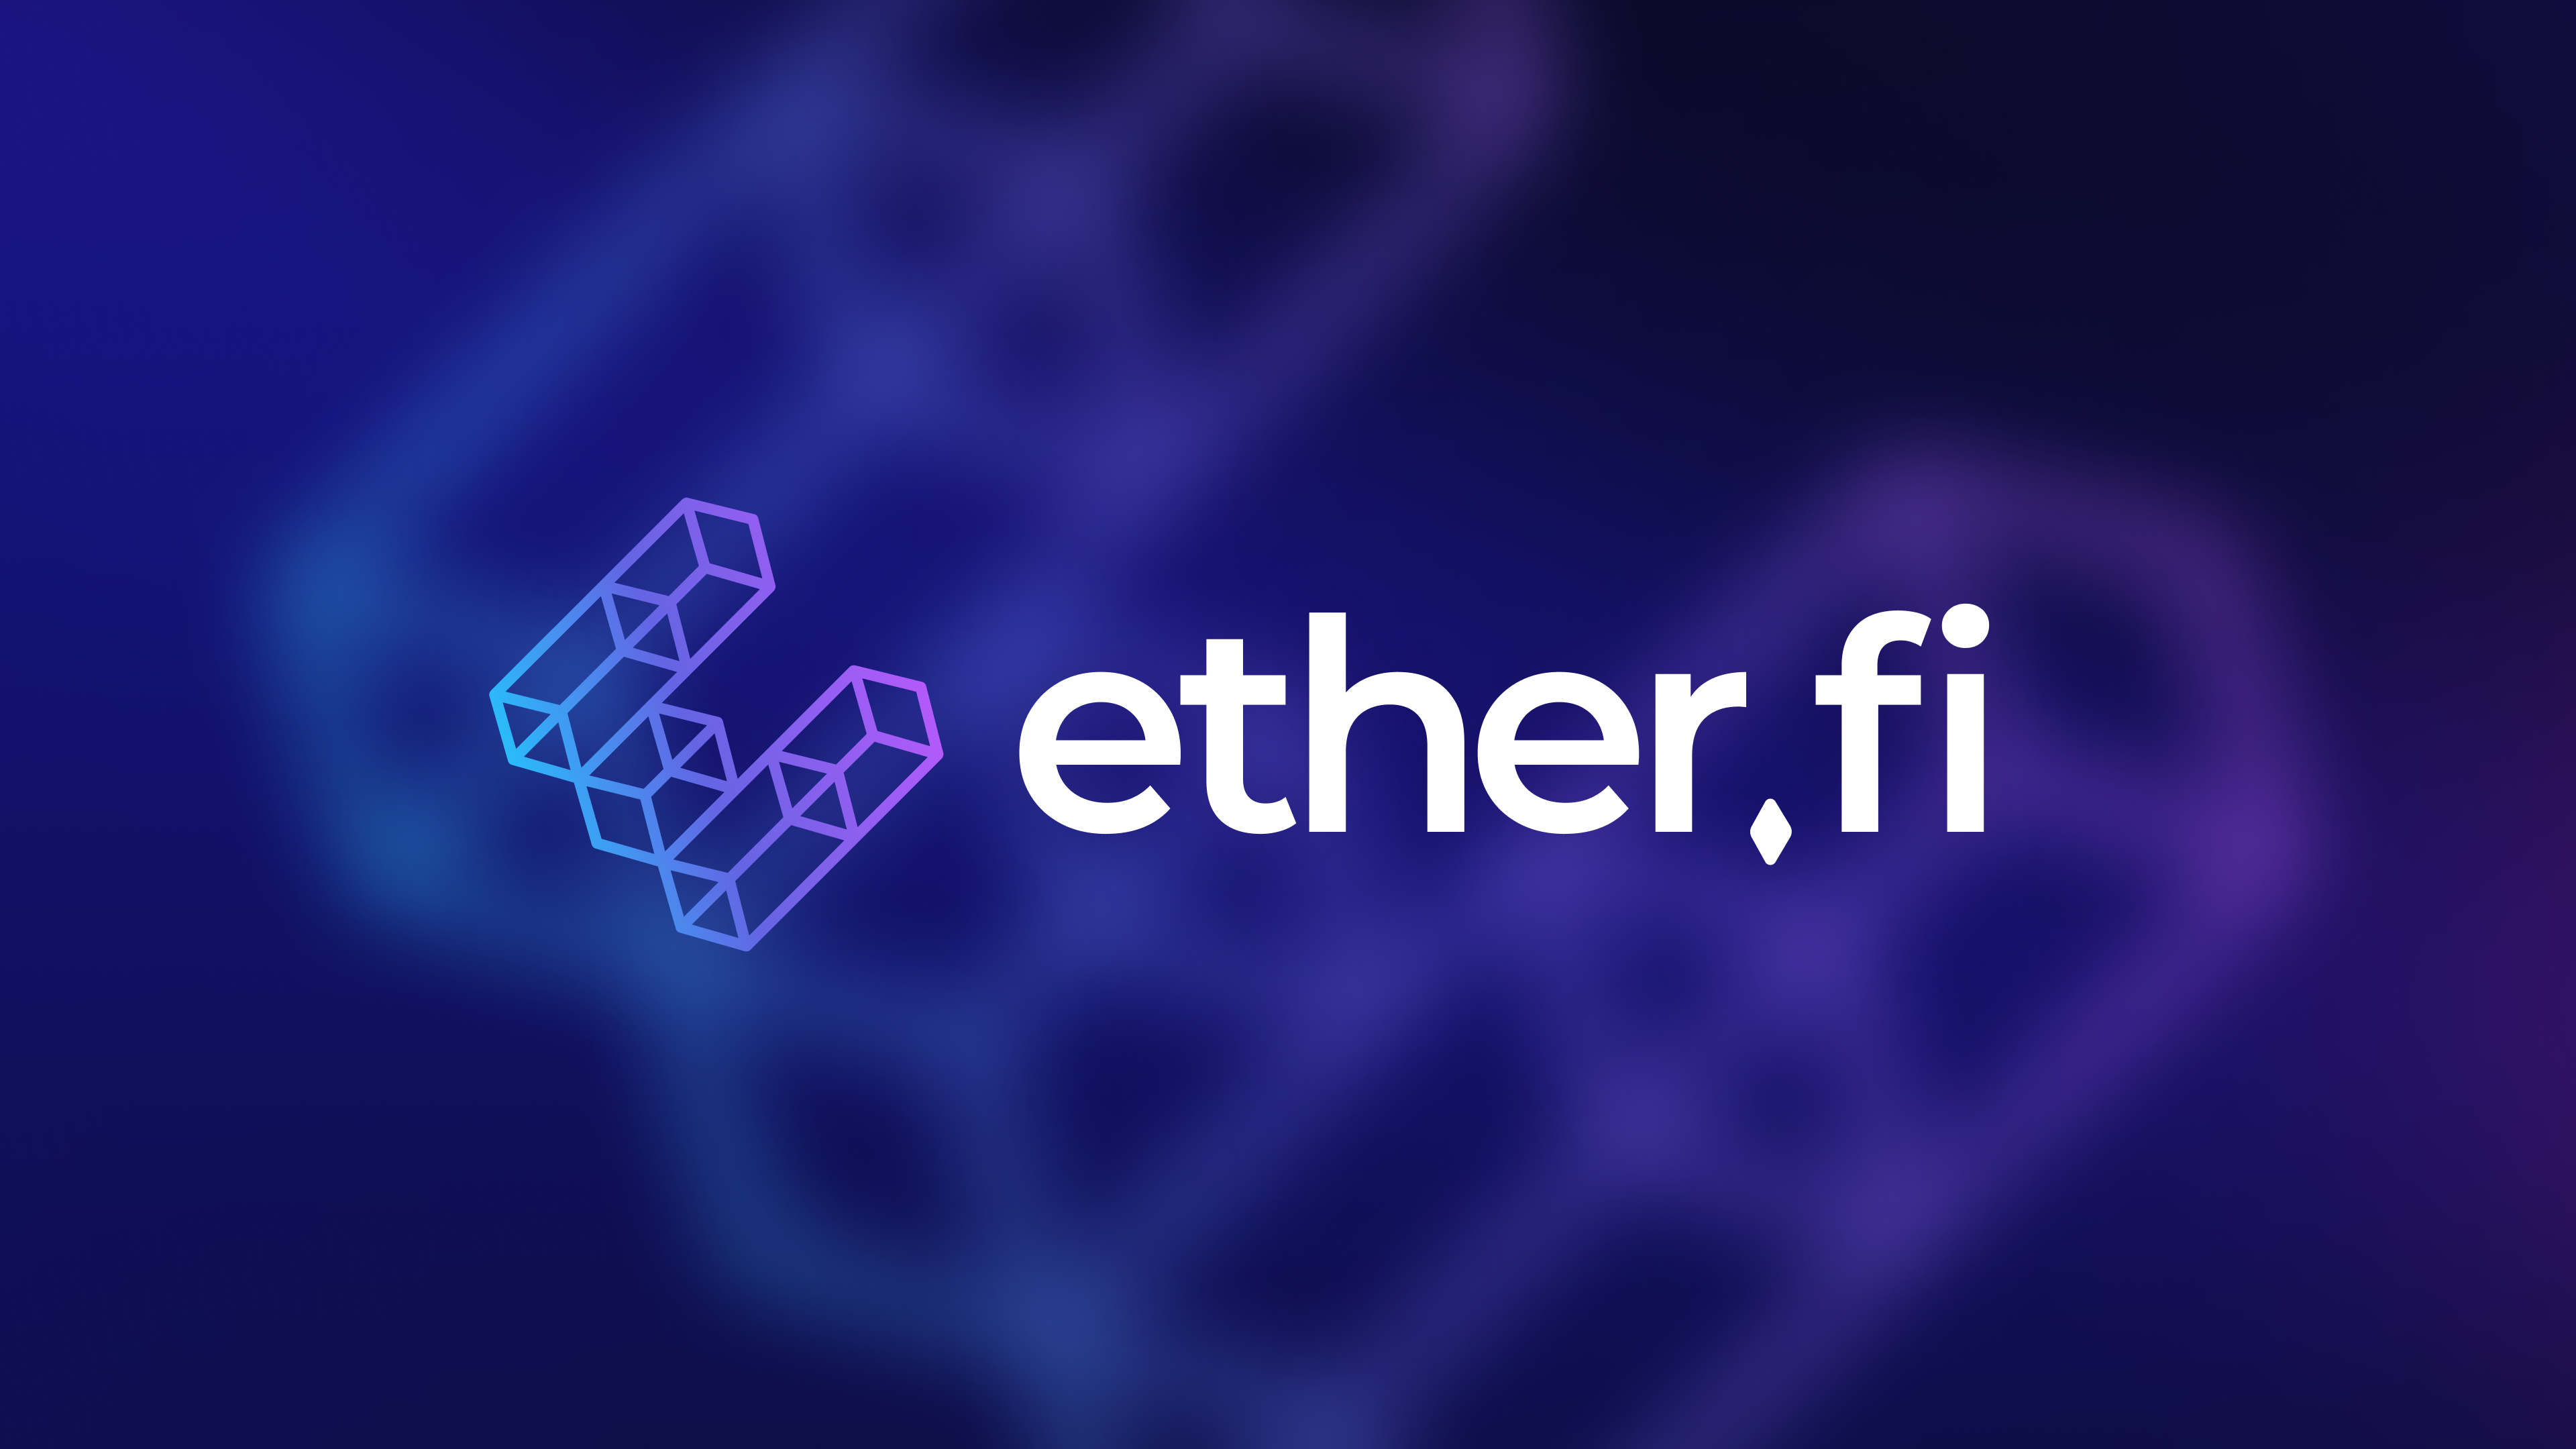 Ether.fi là dự án thứ 49 trên Binance Launchpool